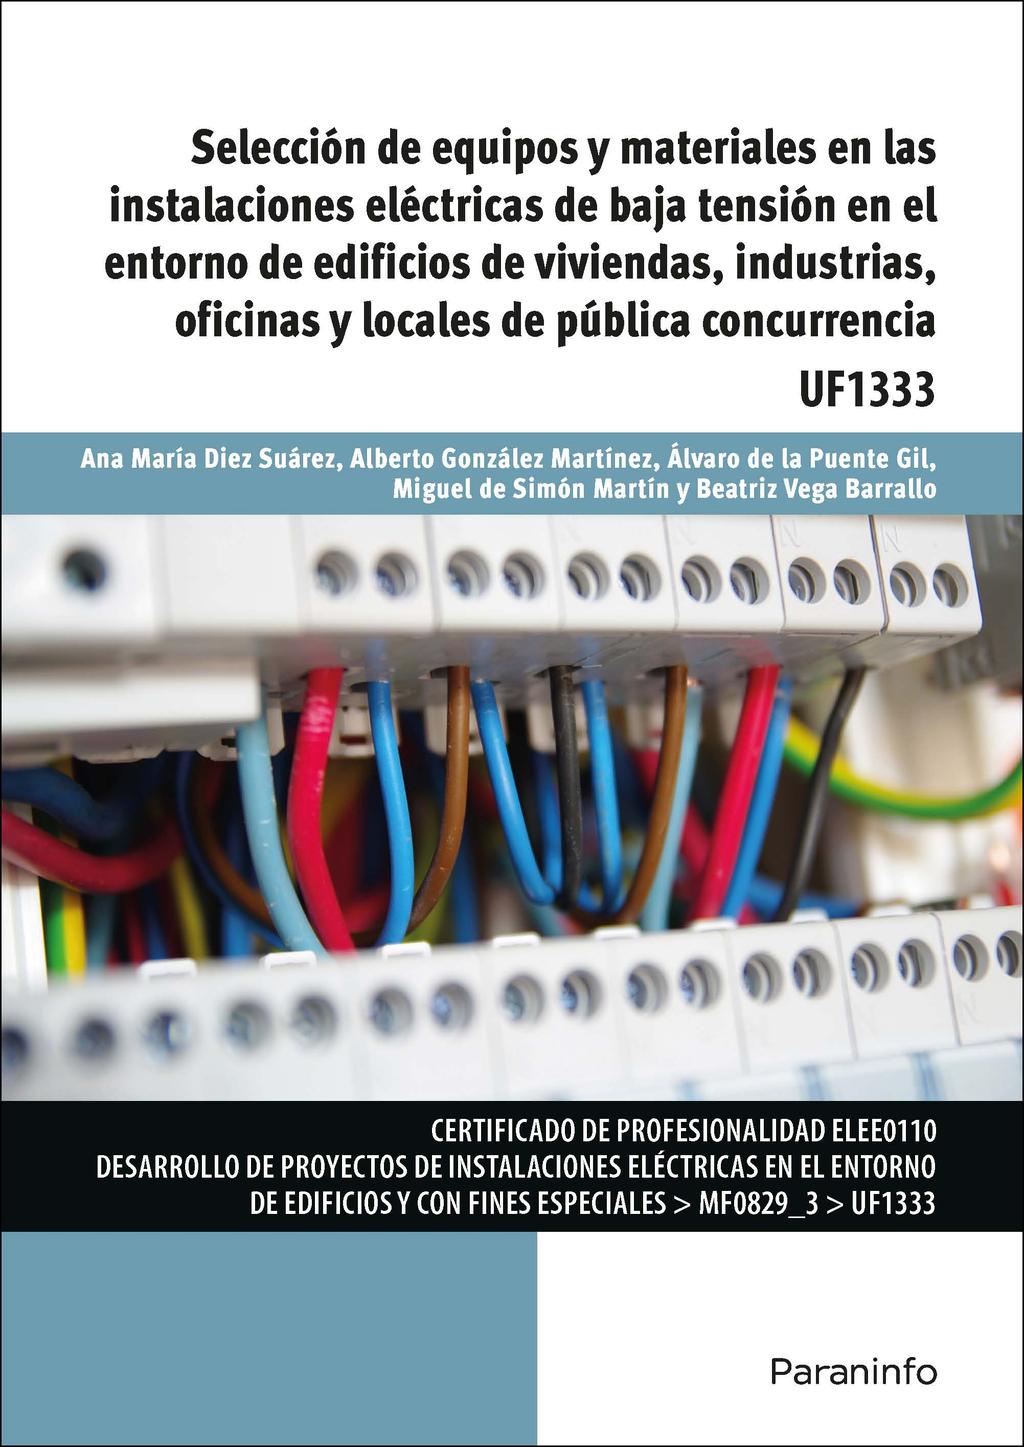 UF1333 - Selección de equipos y materiales en las instalaciones eléctricas de baja tensión en el entorno de edificios de viviendas, industrias, oficinas y locales de pública concurrencia Editorial: